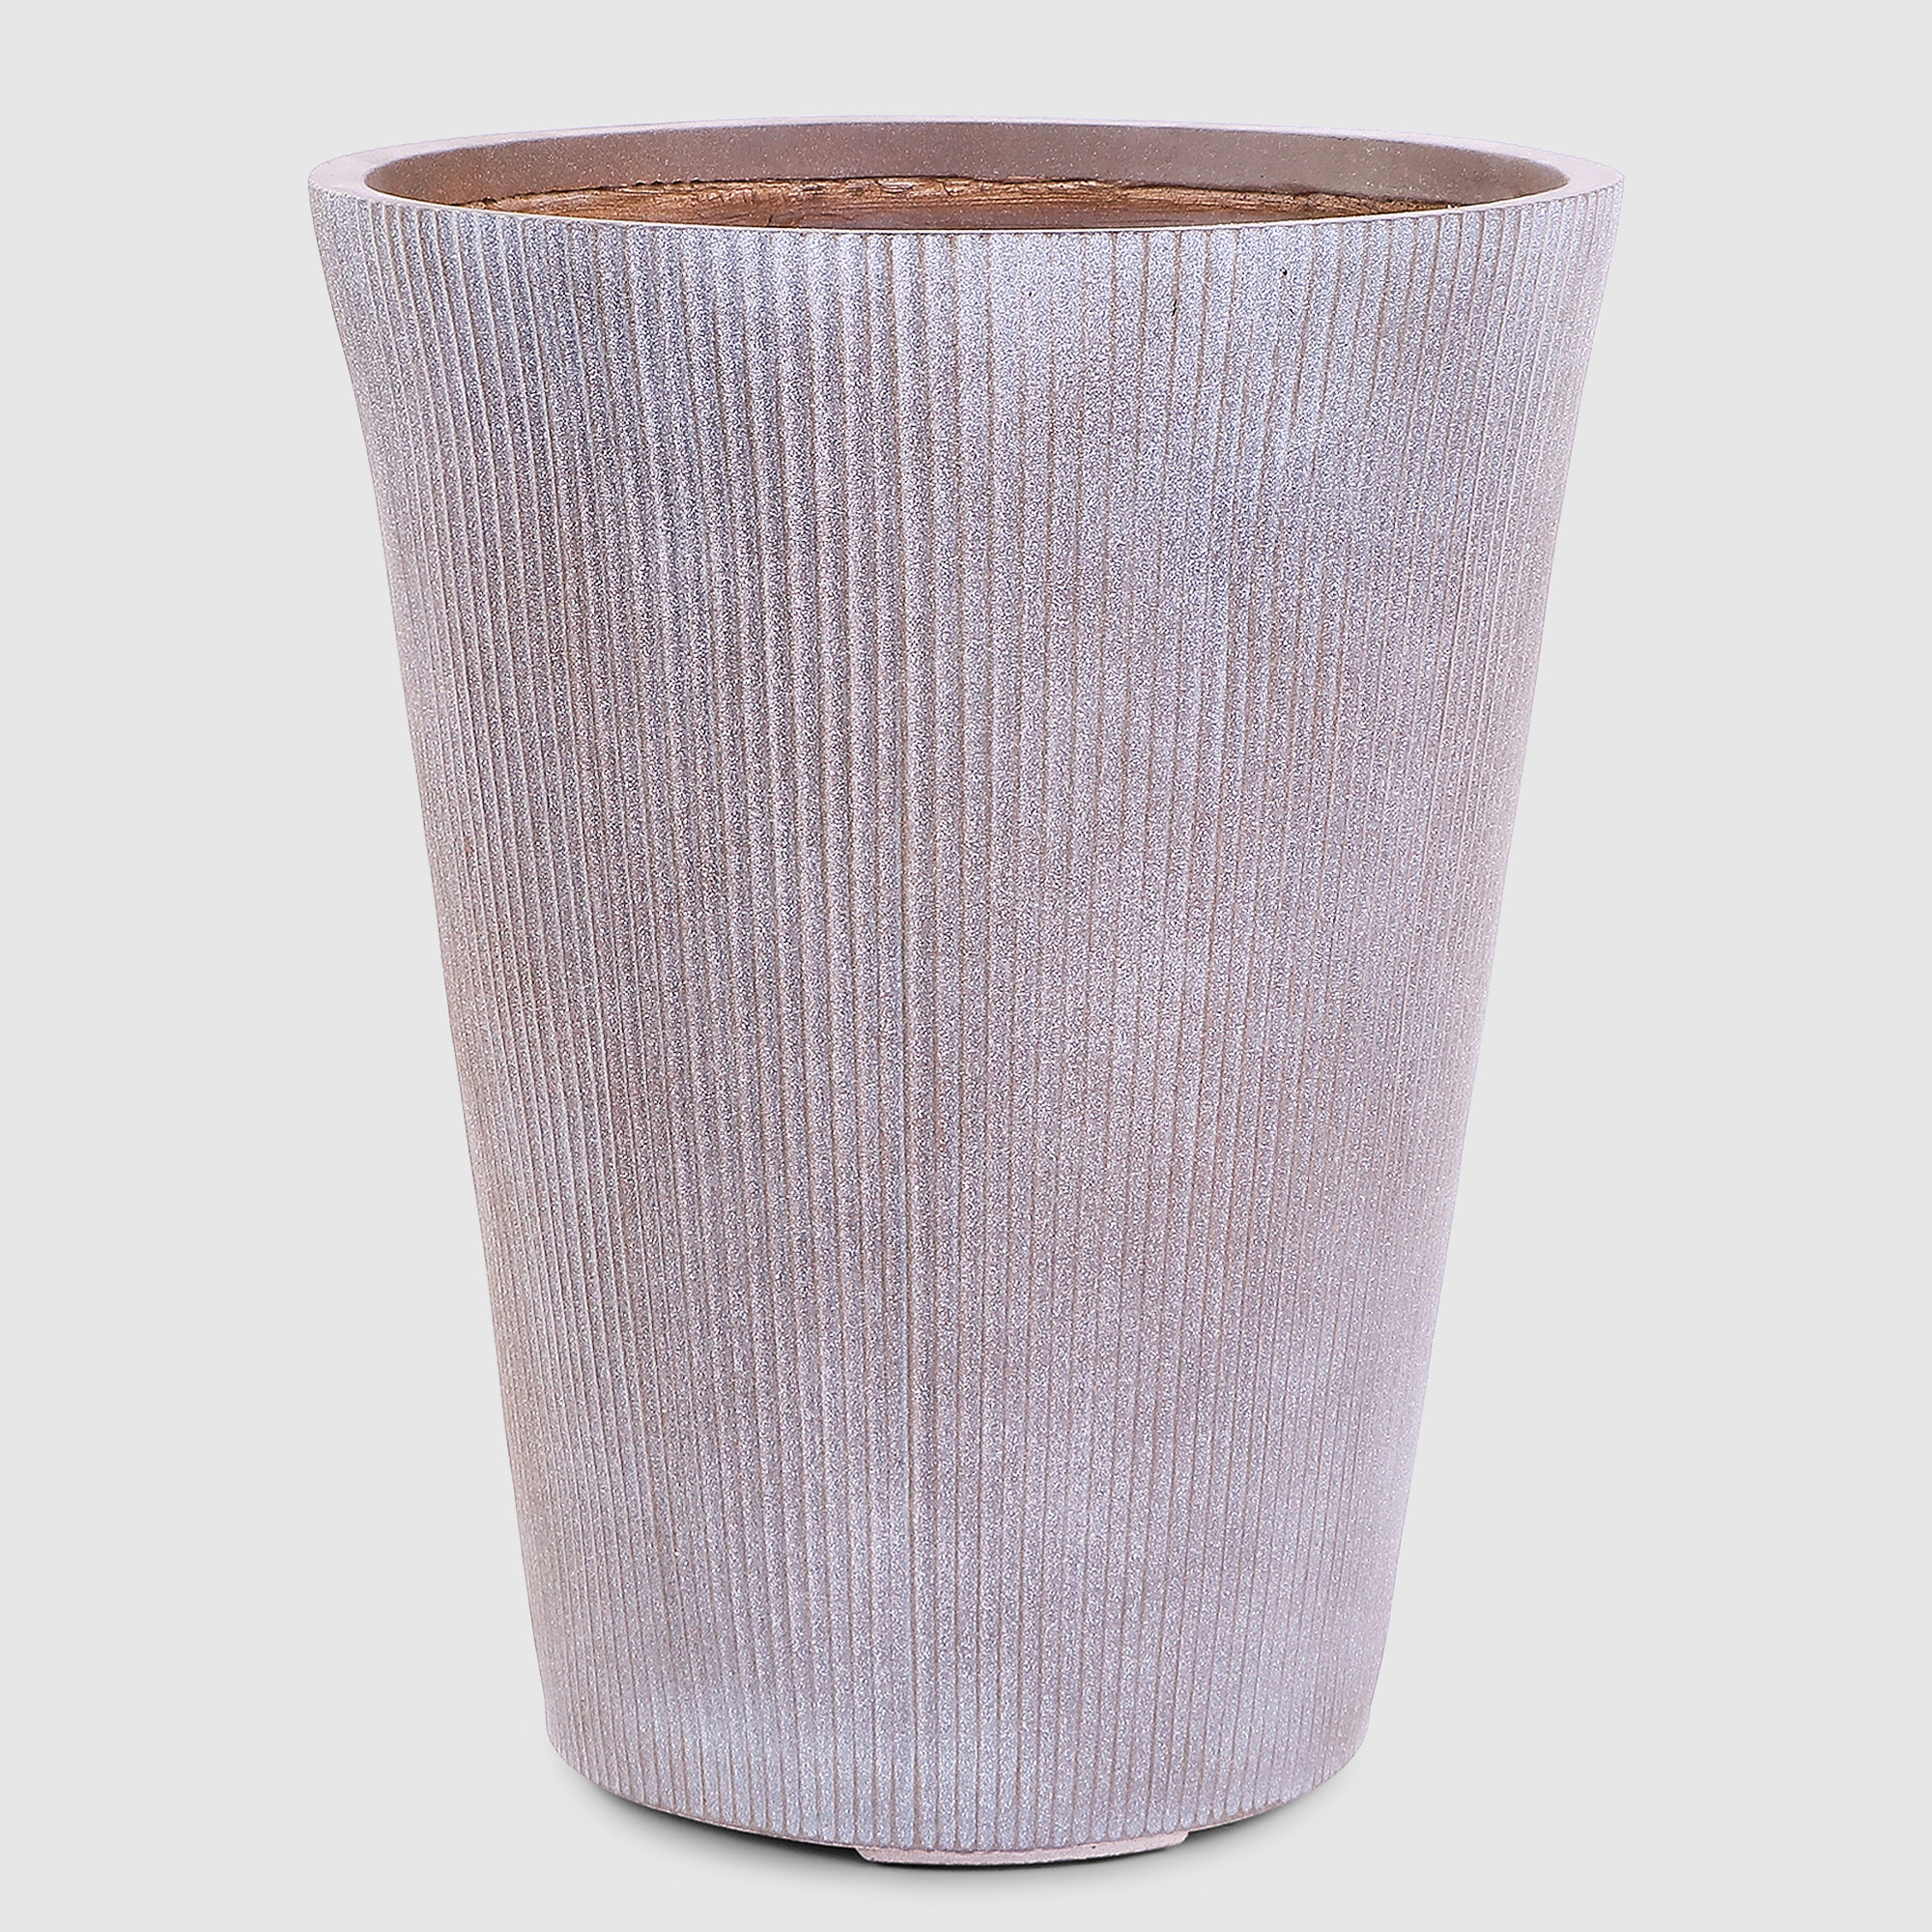 Горшок для цветов L&t pottery высокий серо-коричневый 44х44х55 см